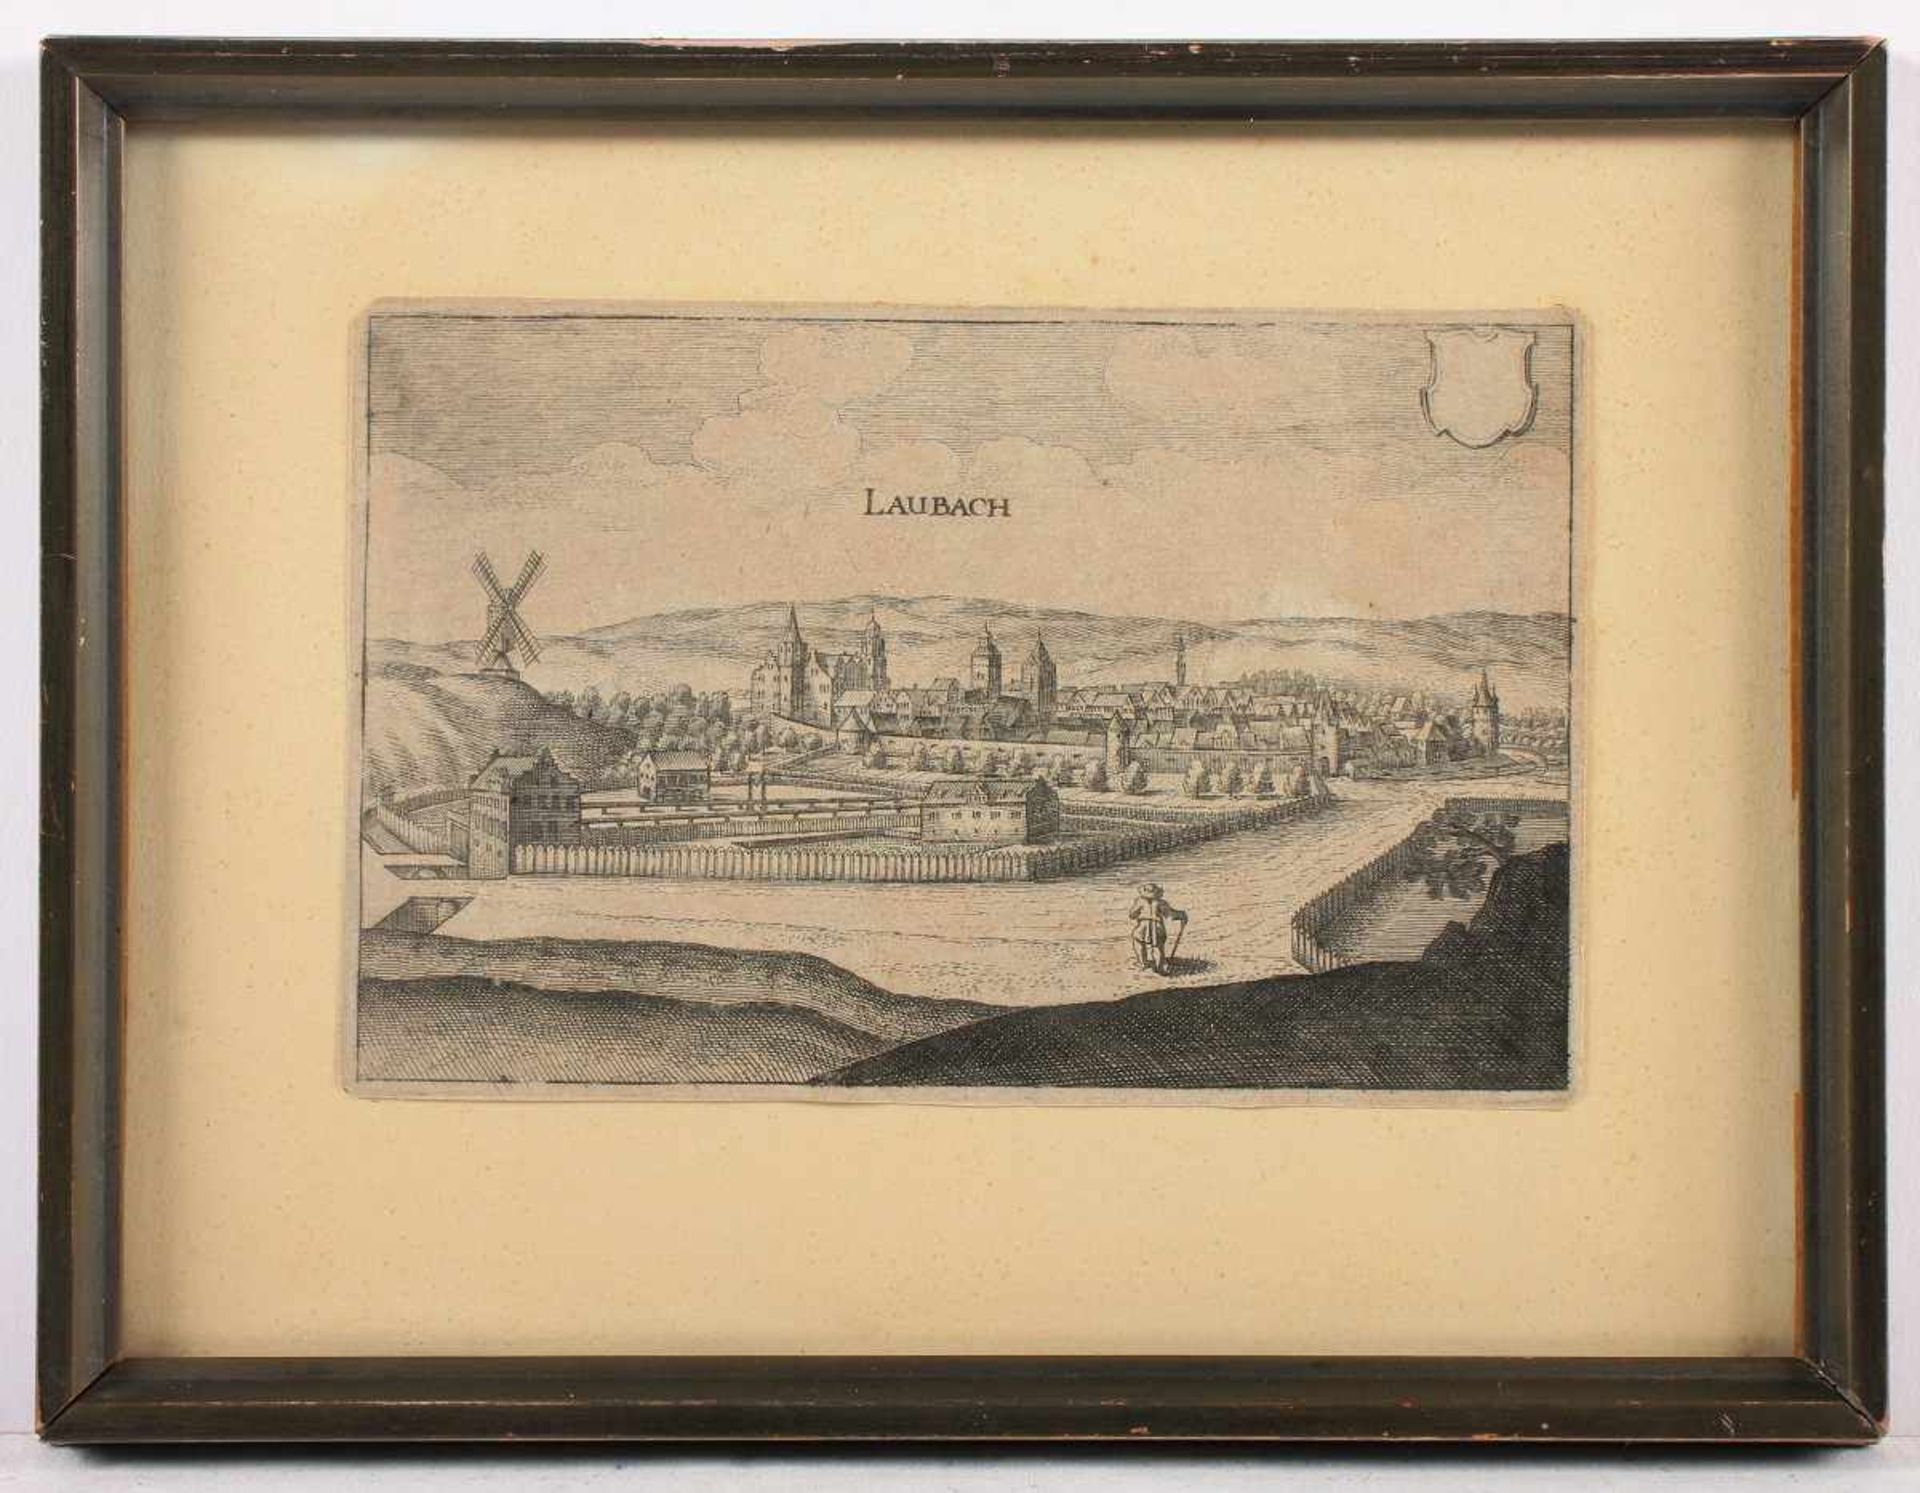 LAUBACH, Kupferstich, 11,5 x 17, M.MERIAN, um 1640, läs., R.